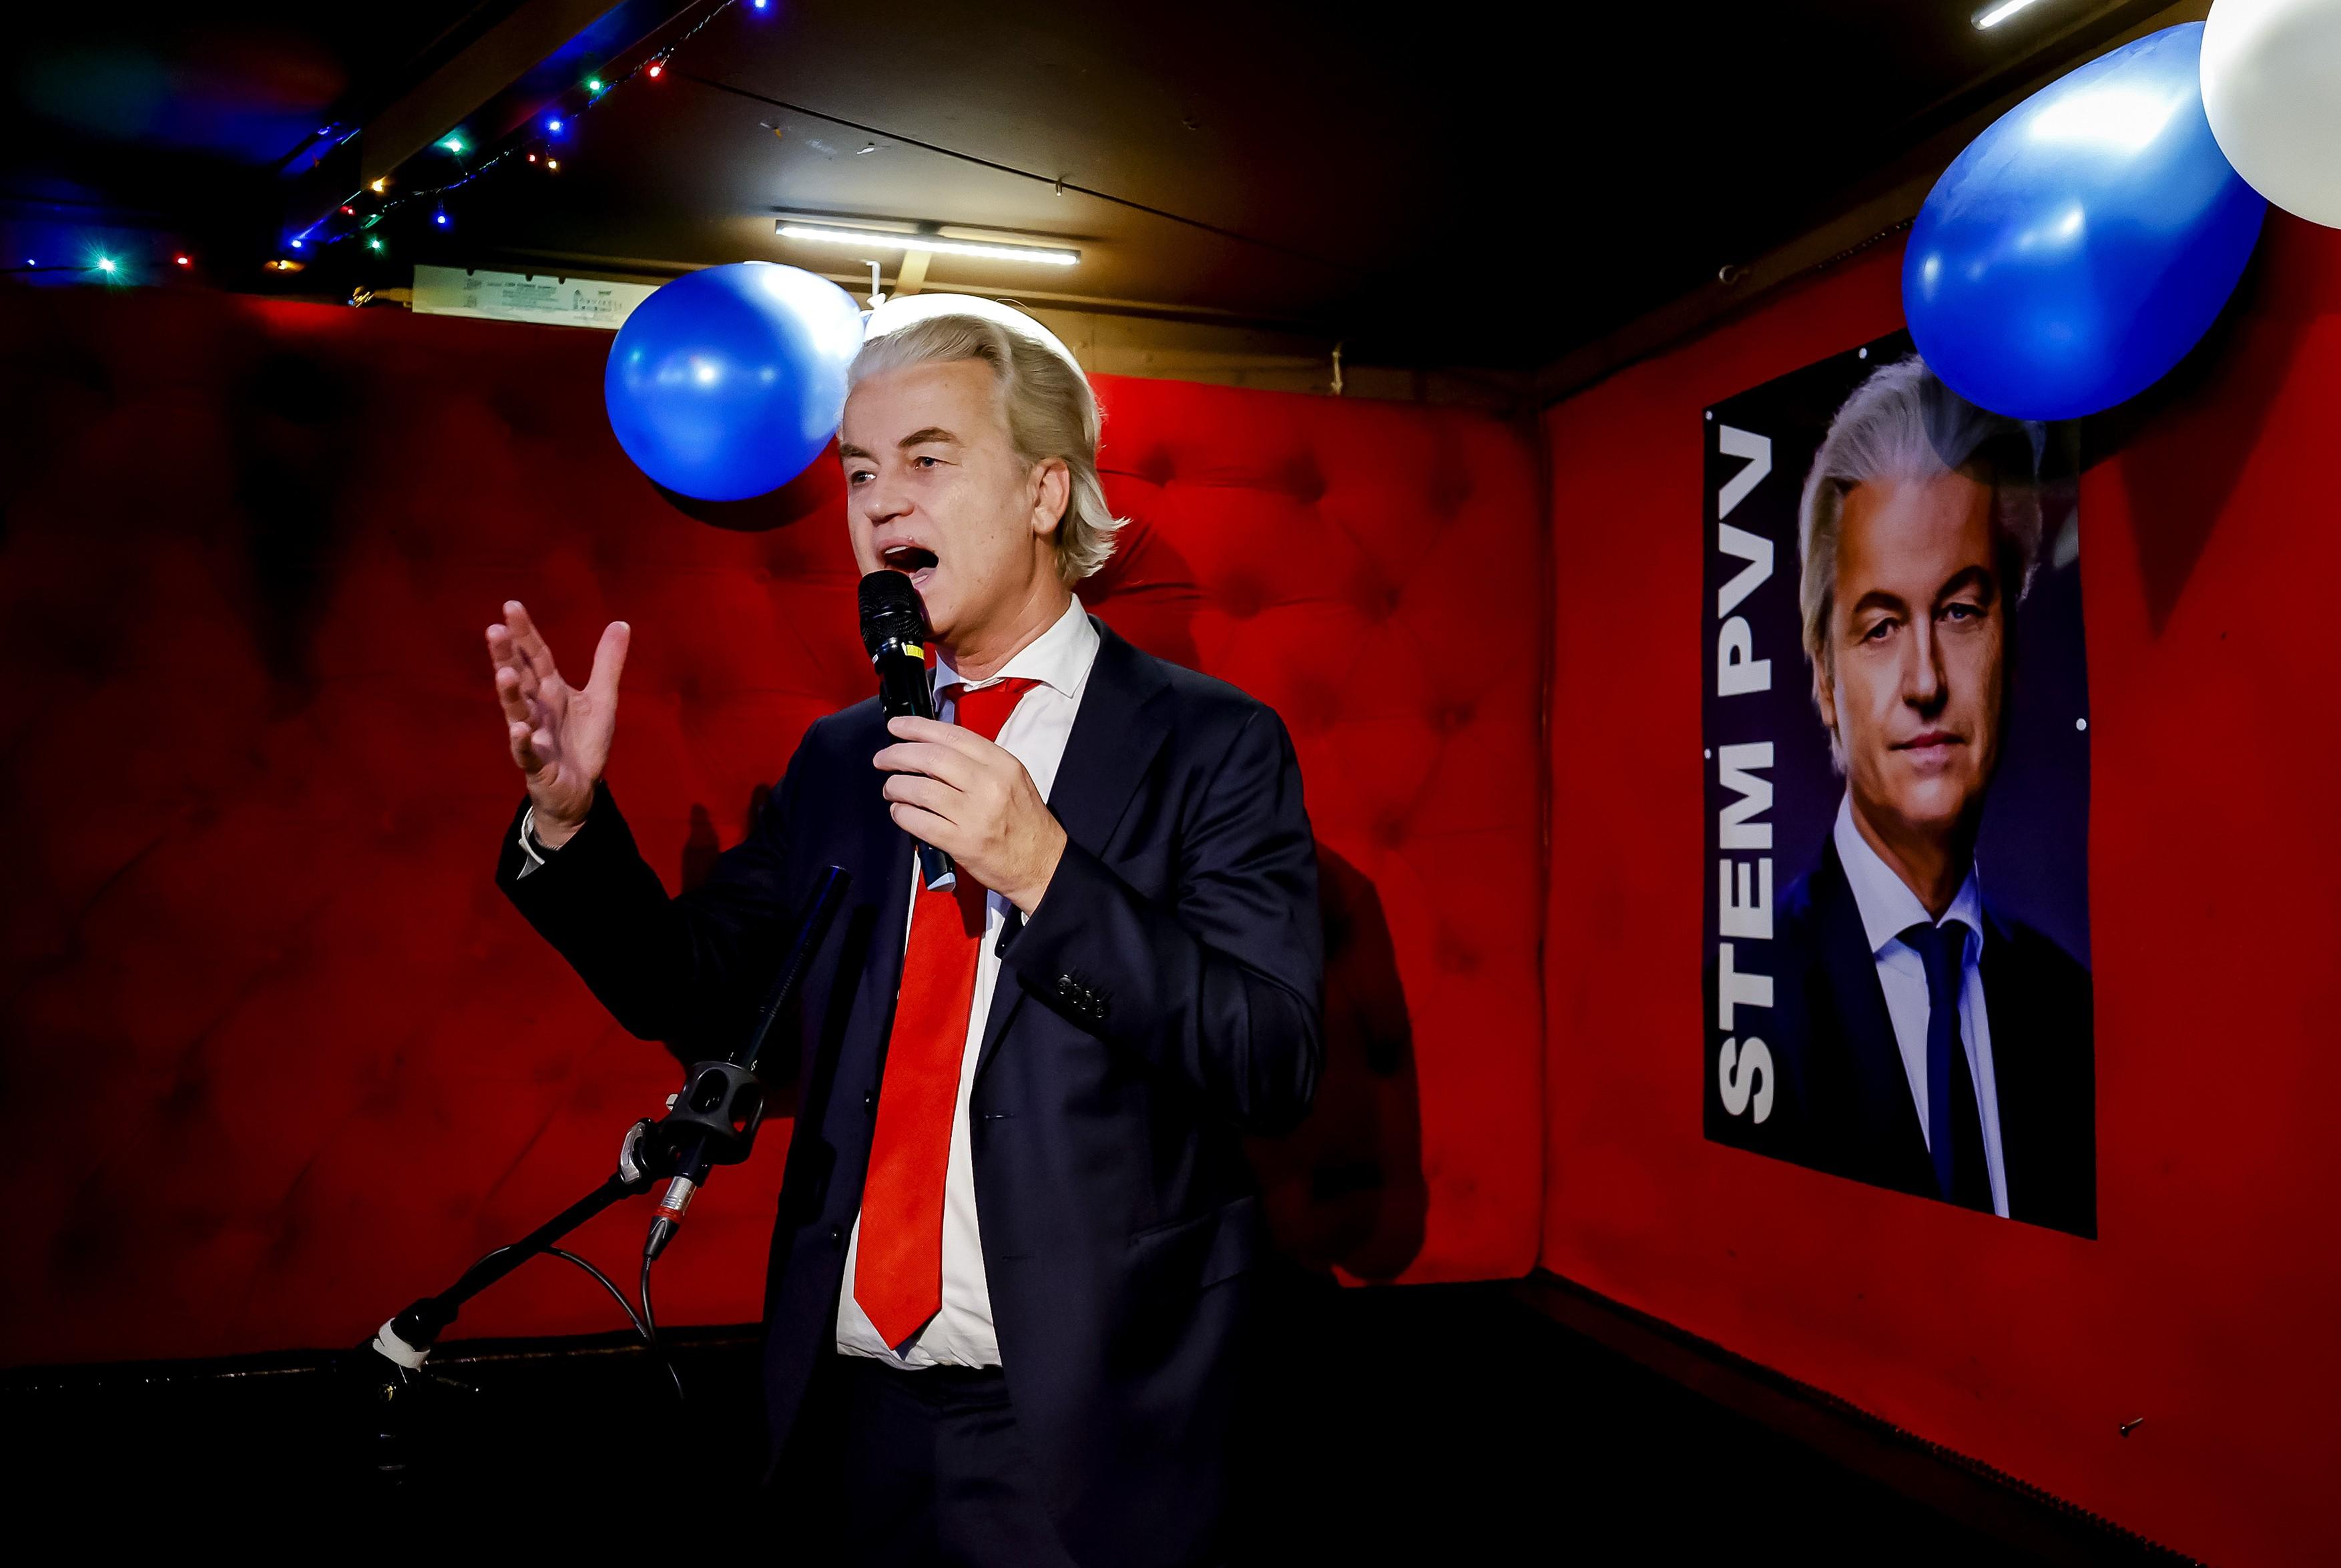 Partidul de extremă dreaptă al lui Geert Wilders, antieuropean şi antimigraţie, a câştigat alegerile în Olanda. Va trimite o undă de șoc în toată Europa